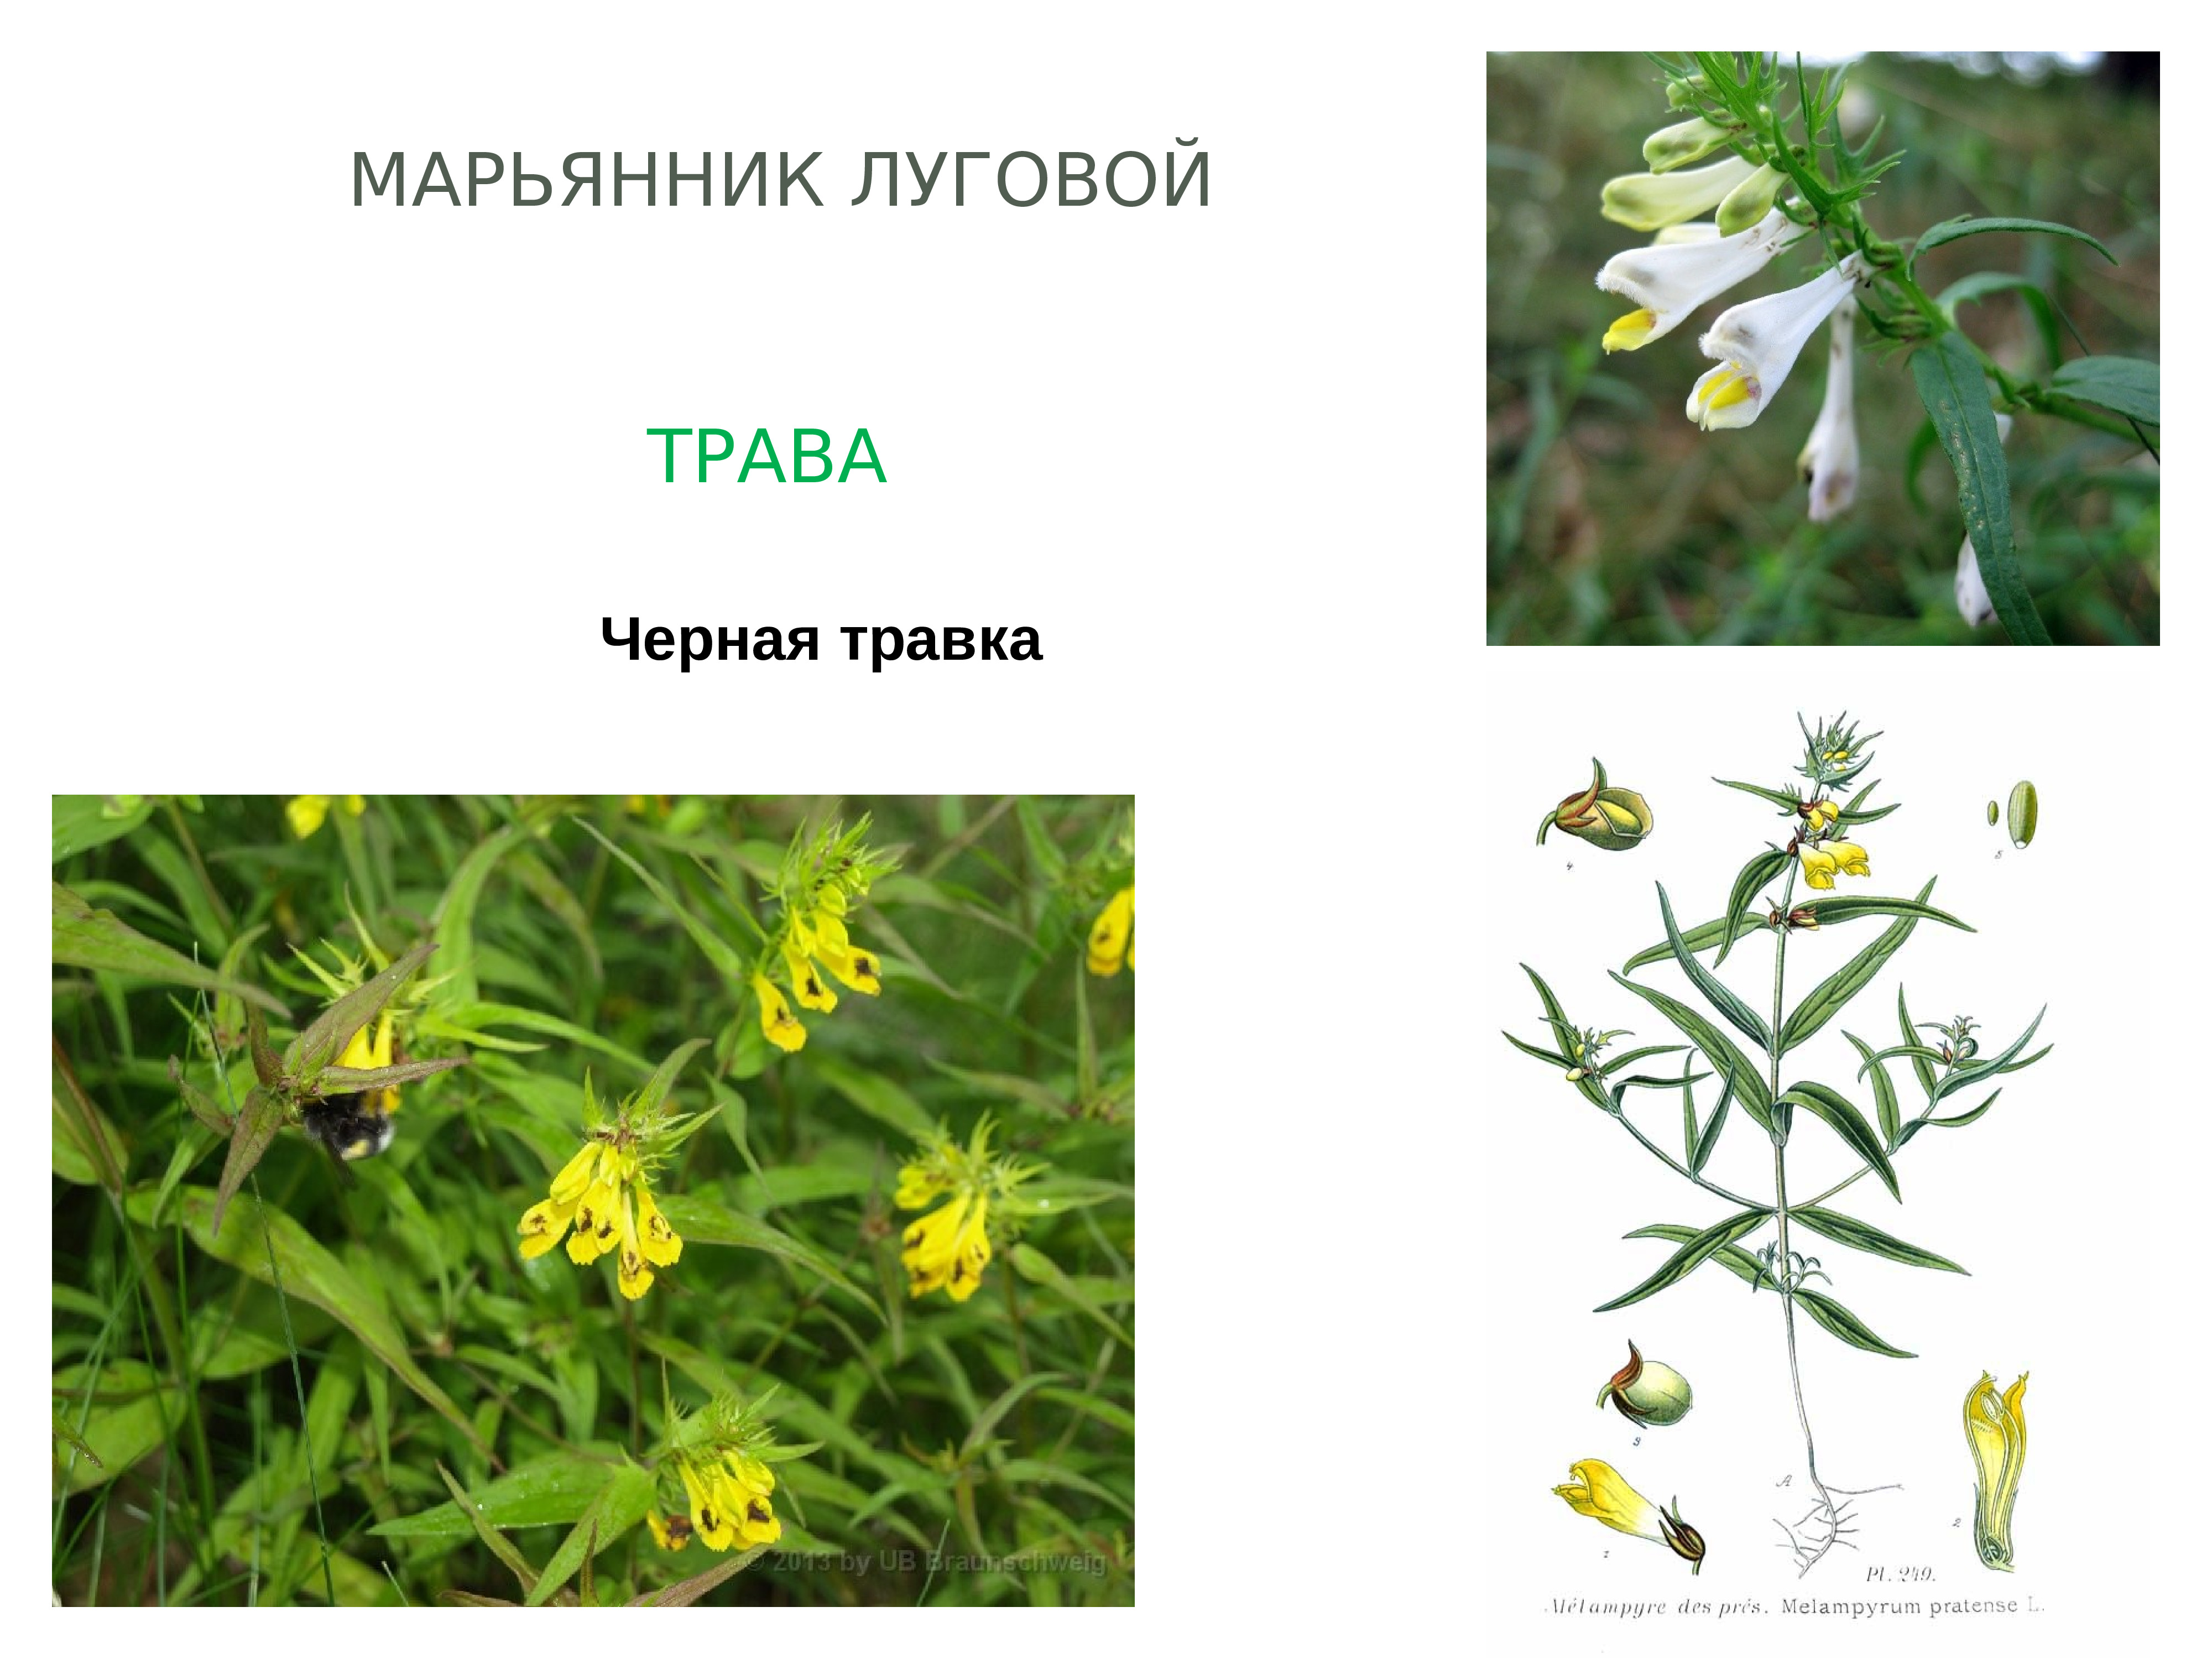 Сообщение о лечебном растении на башкирском языке